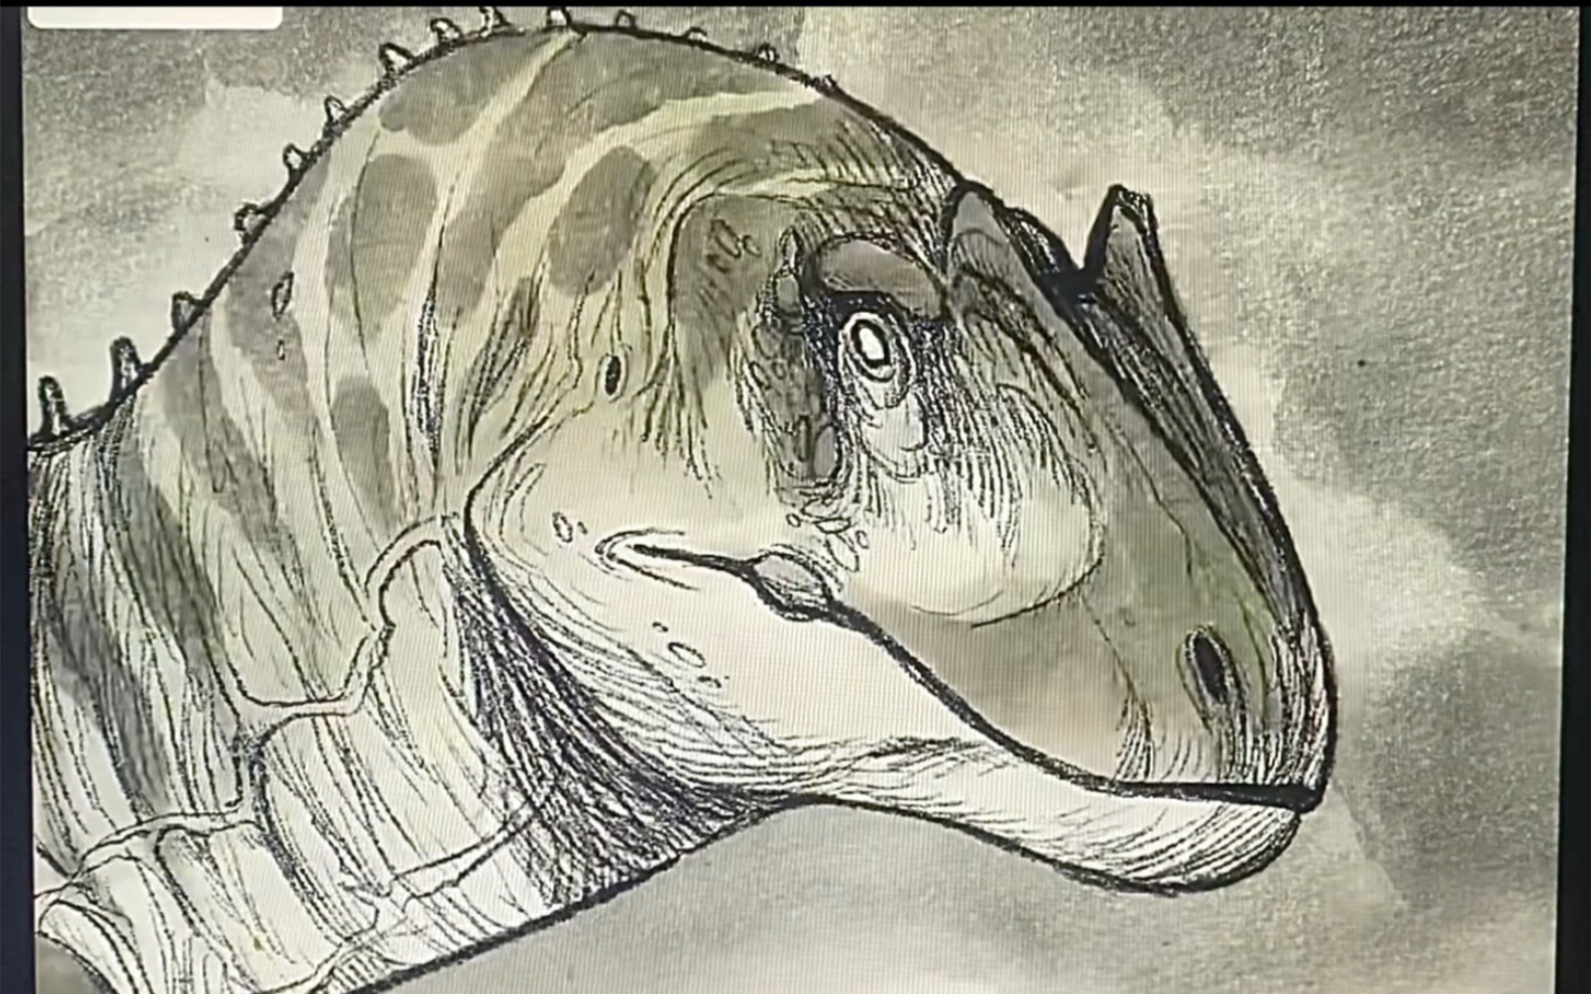 还有比这更炫的恐龙绘画分解吗？